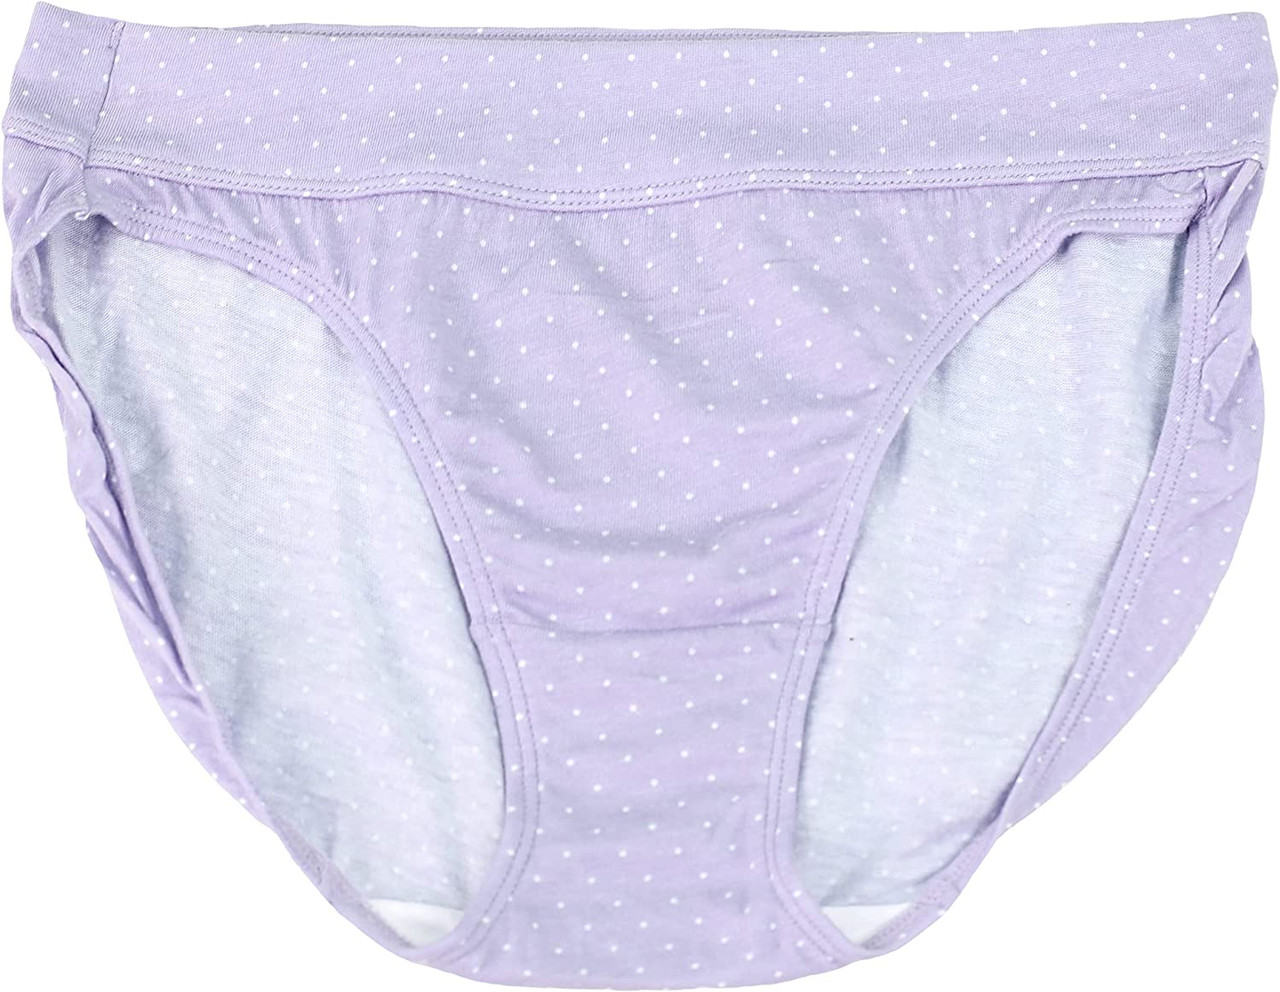 Ultra Soft Cotton Modal Bikini Panties (6-Pack) product image